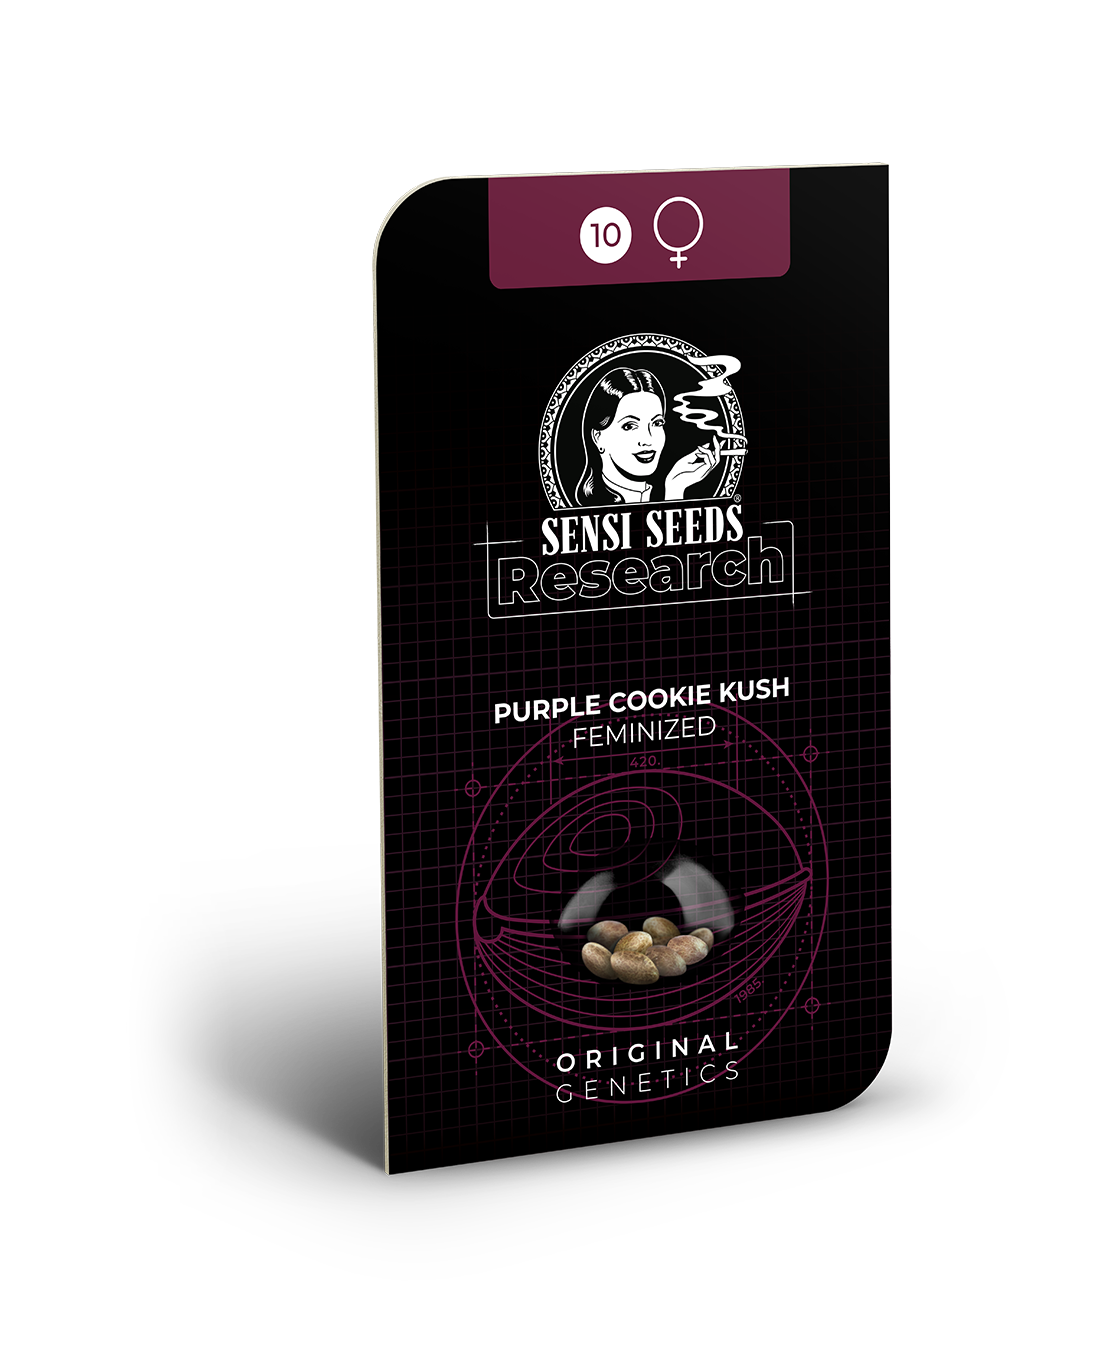 Freigestellte Verpackung von Purple Cookie Kush Hanfsamen und Cannabis Samen zum Anbauen